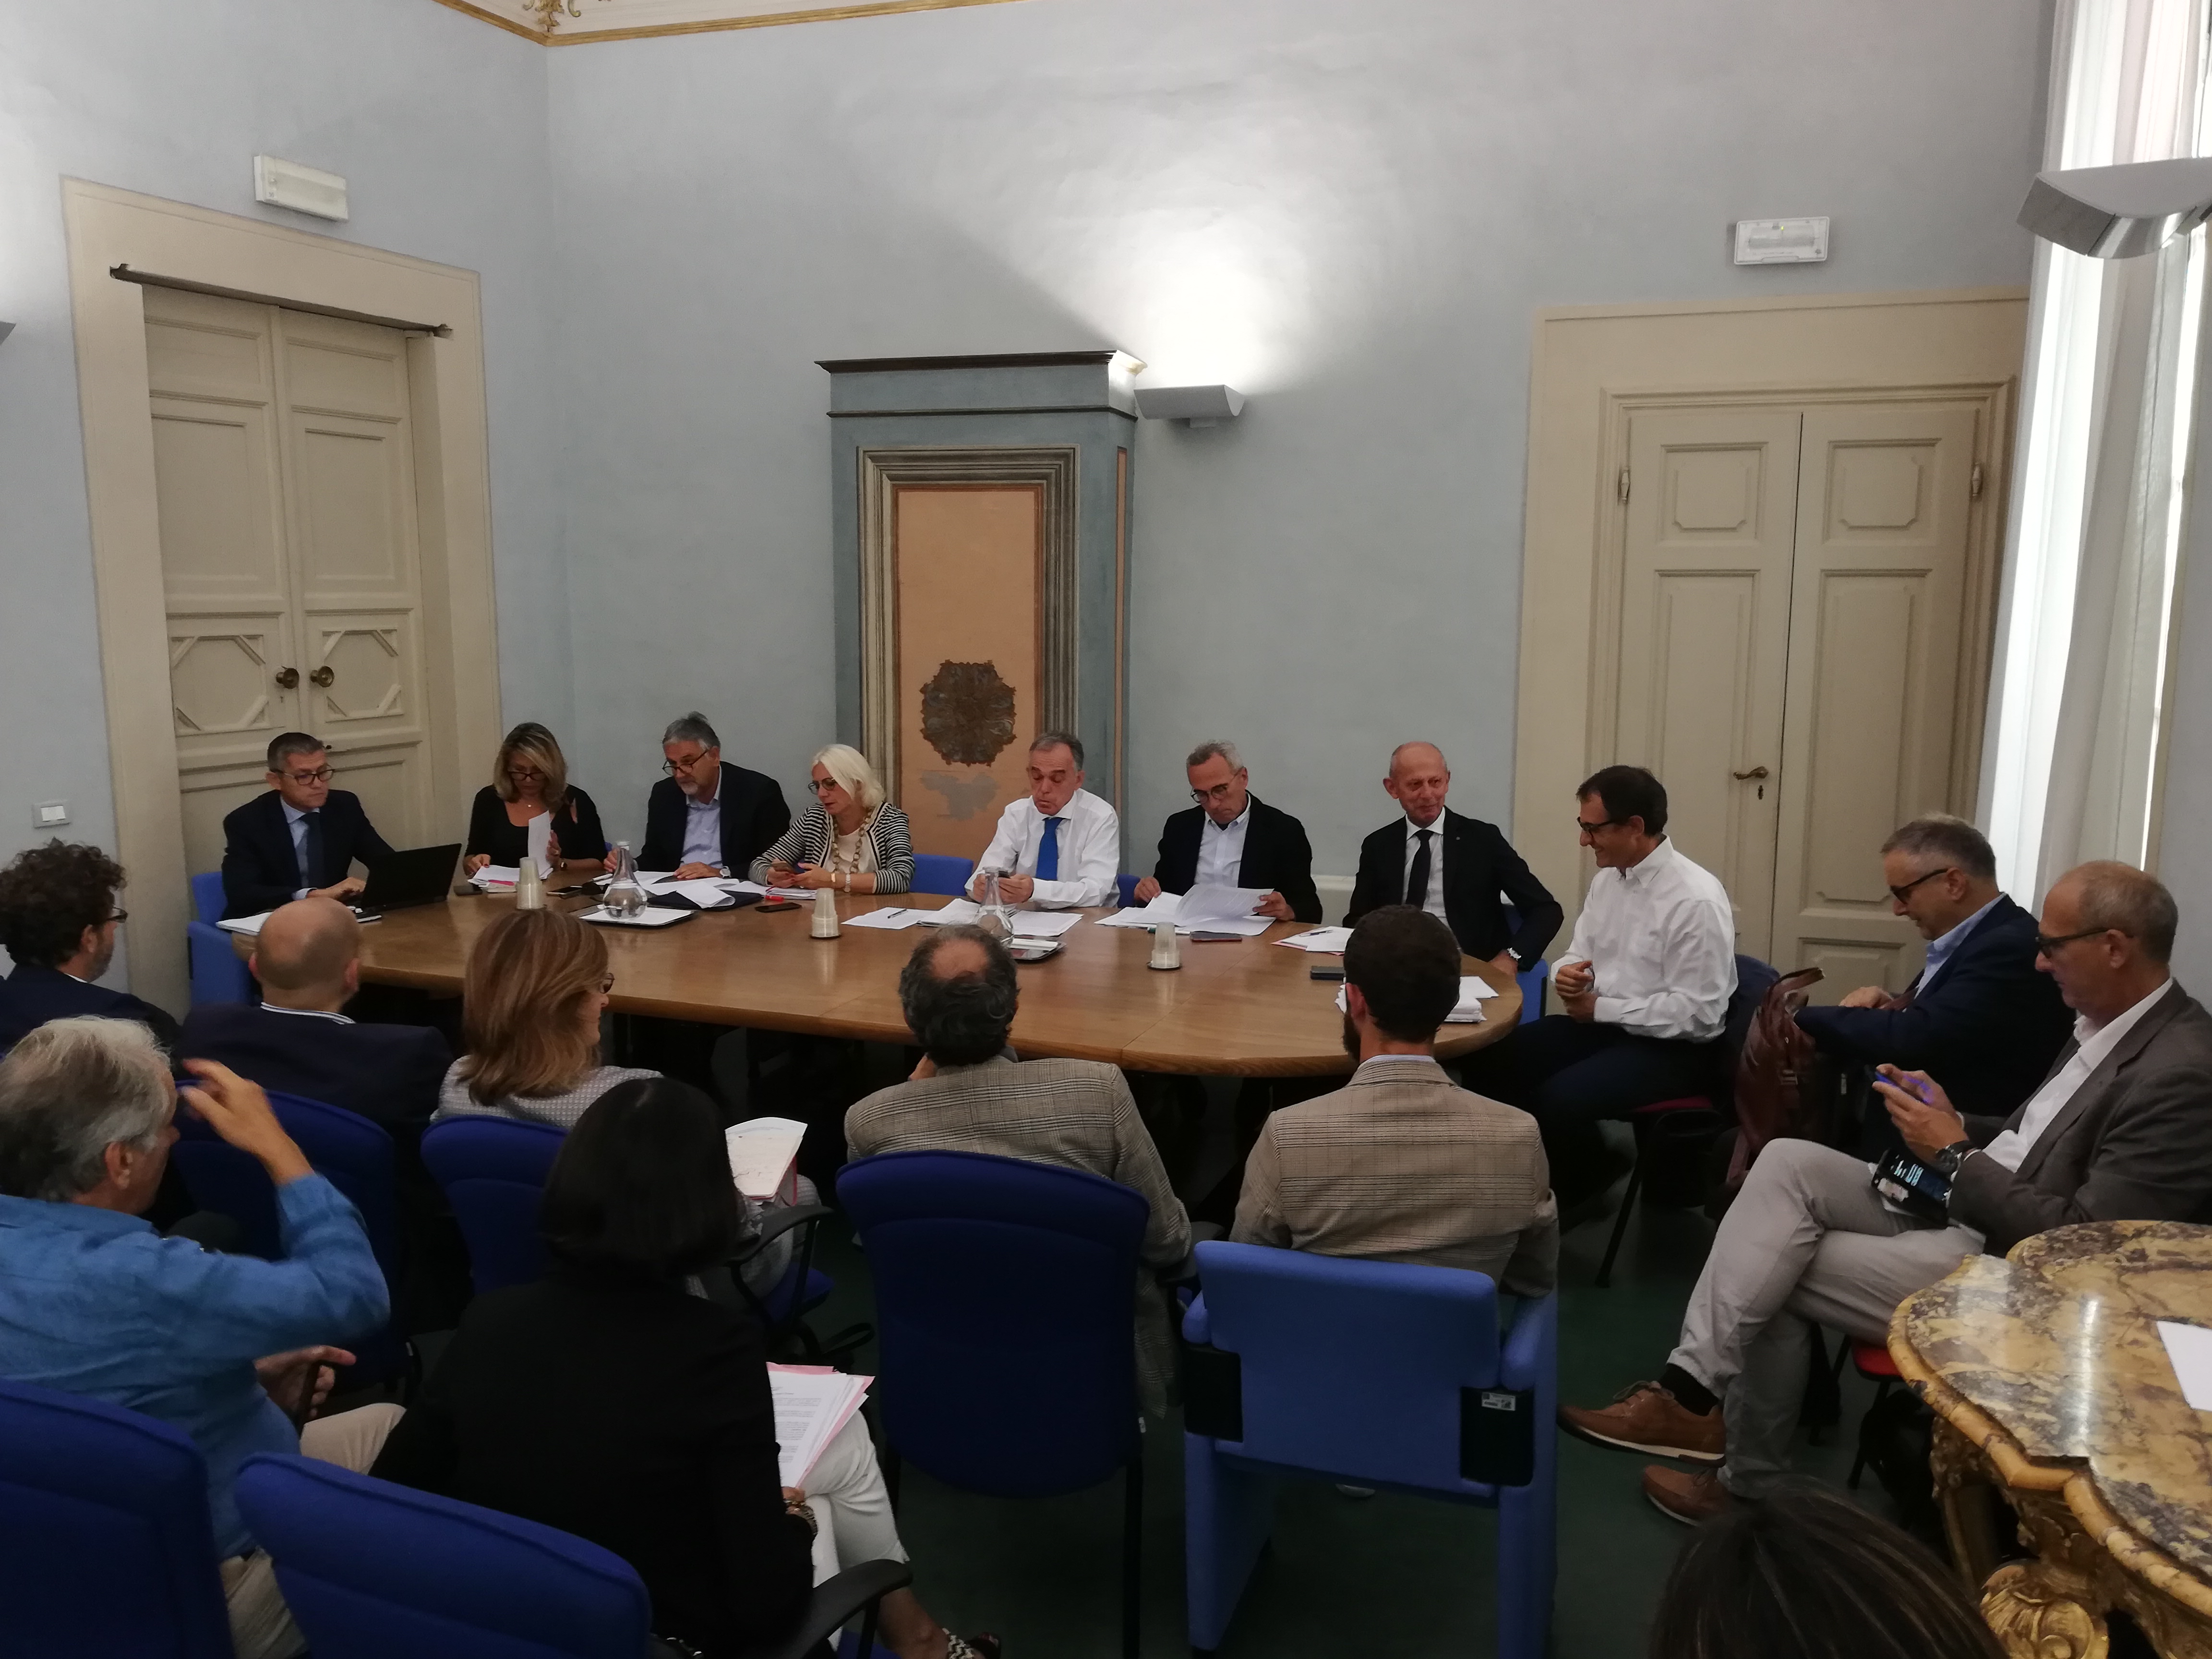 Patto per lo sviluppo: programmate due iniziative pubbliche a Livorno e Firenze 